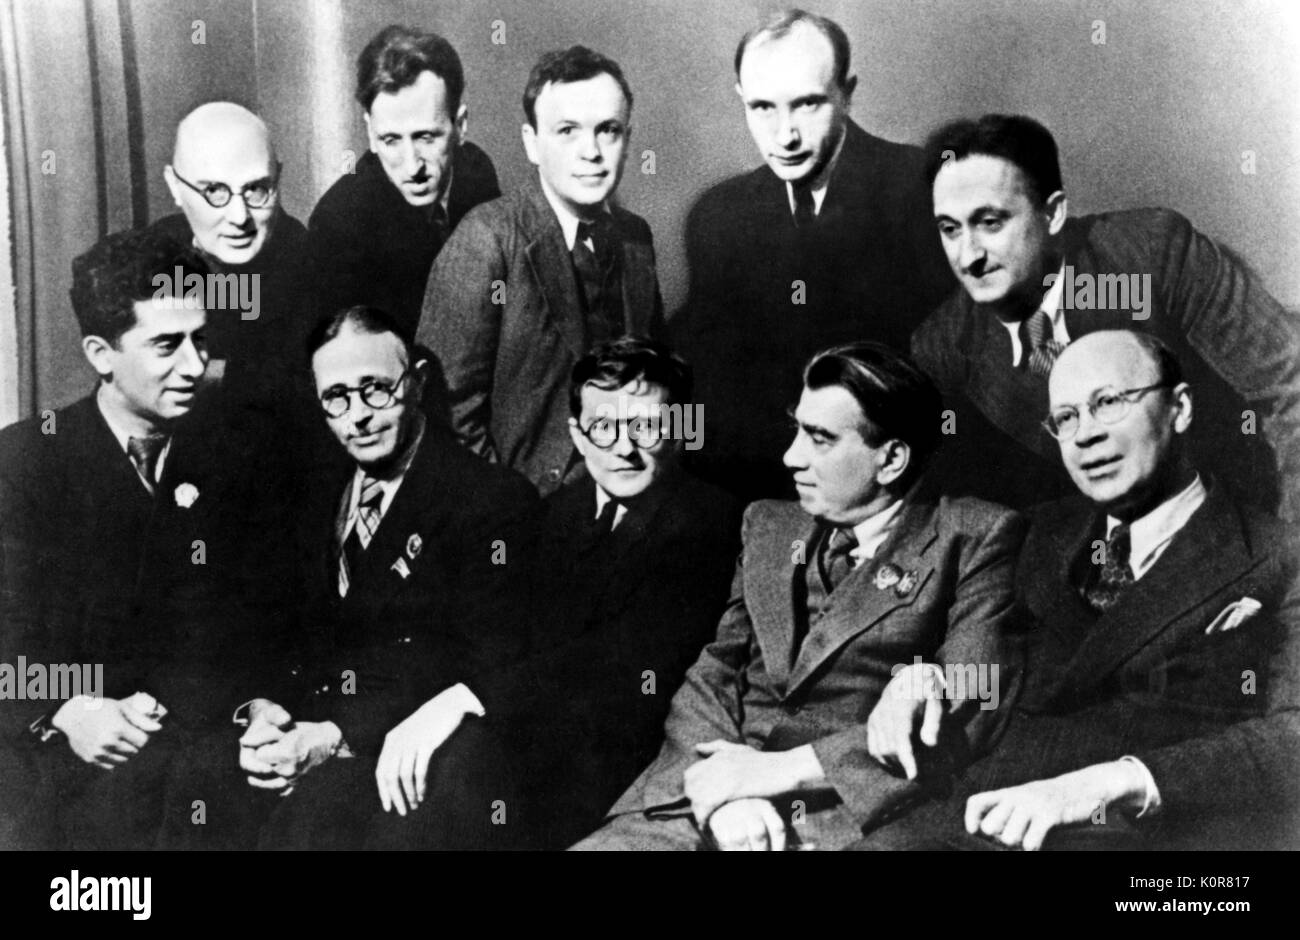 Dmitri Schostakowitsch mit anderen russischen Komponisten in Moskau, 1946. Sitzung (v.l.n.r.): A.I. Chatschaturjan, Uzeir Gadzhibekov, D.D. Schostakowitsch, R. M. Gliere, S.S. Prokofjew. Russischen Komponisten, 25. September 1906 - 9. August 1975. Schostakowitsch Stockfoto